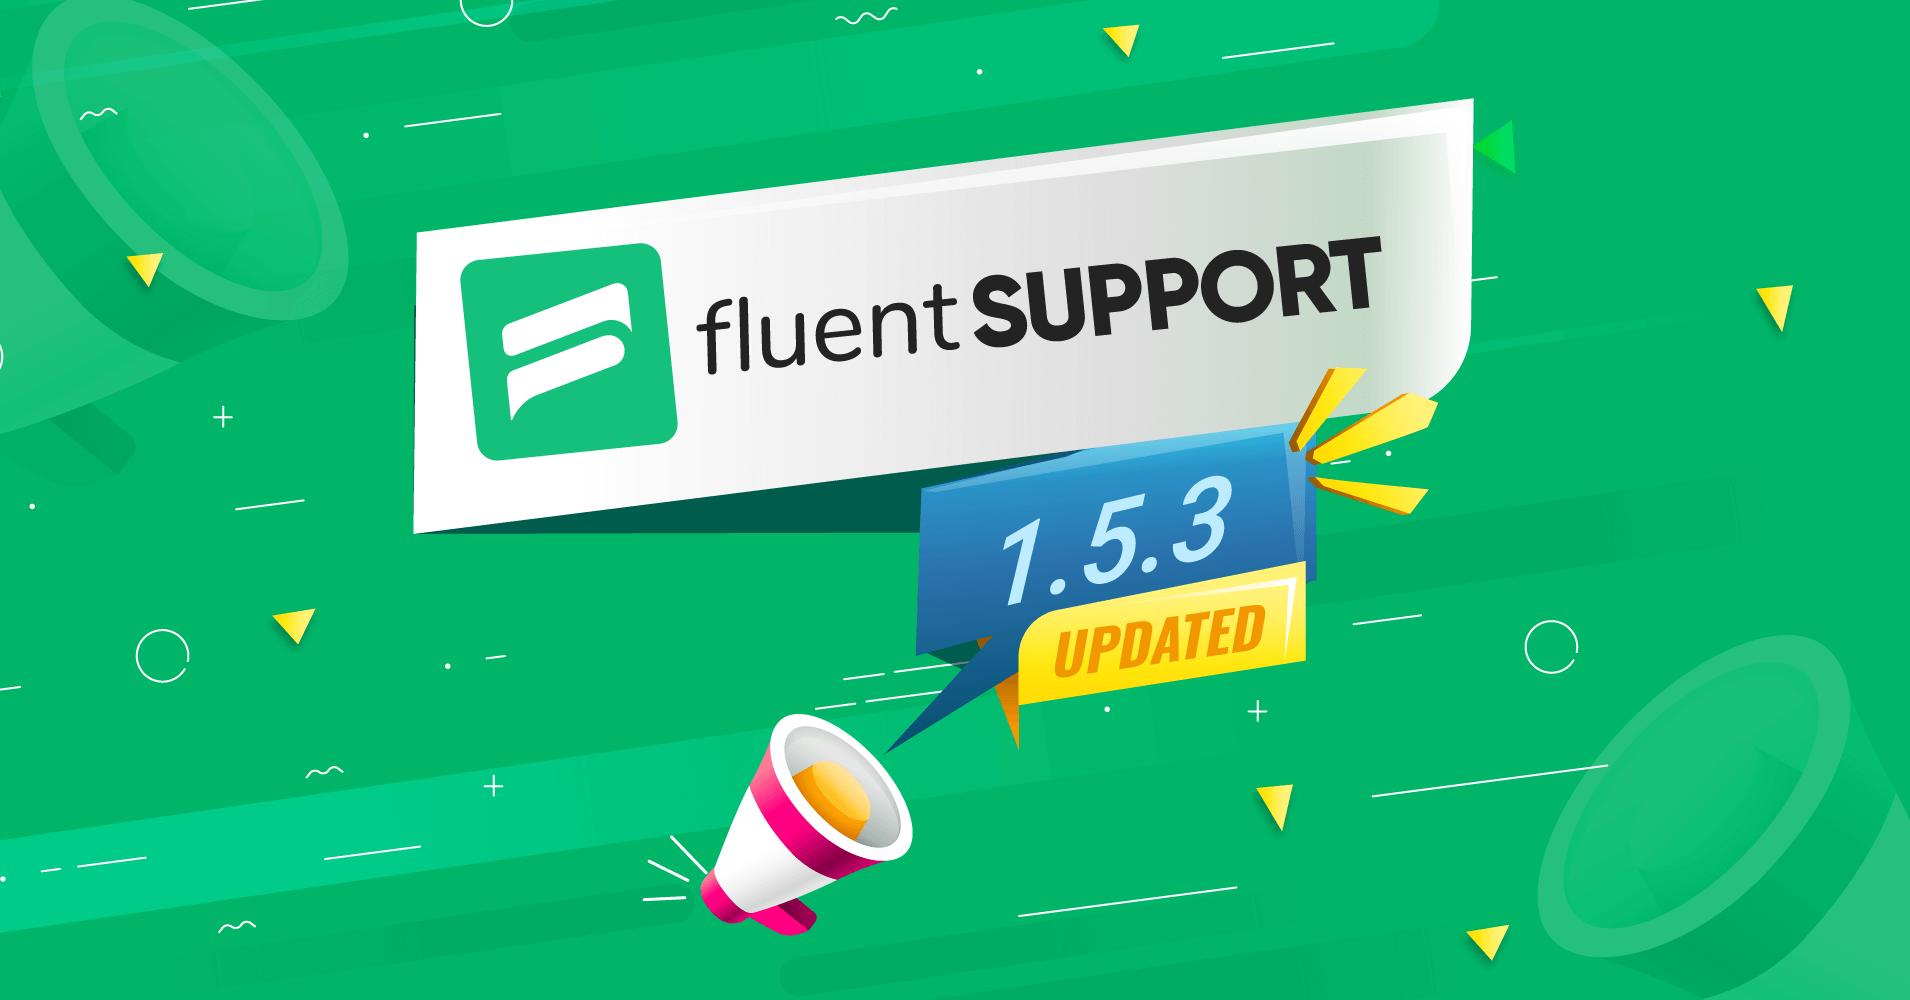 fluent support helpdesk plugin for wordpress